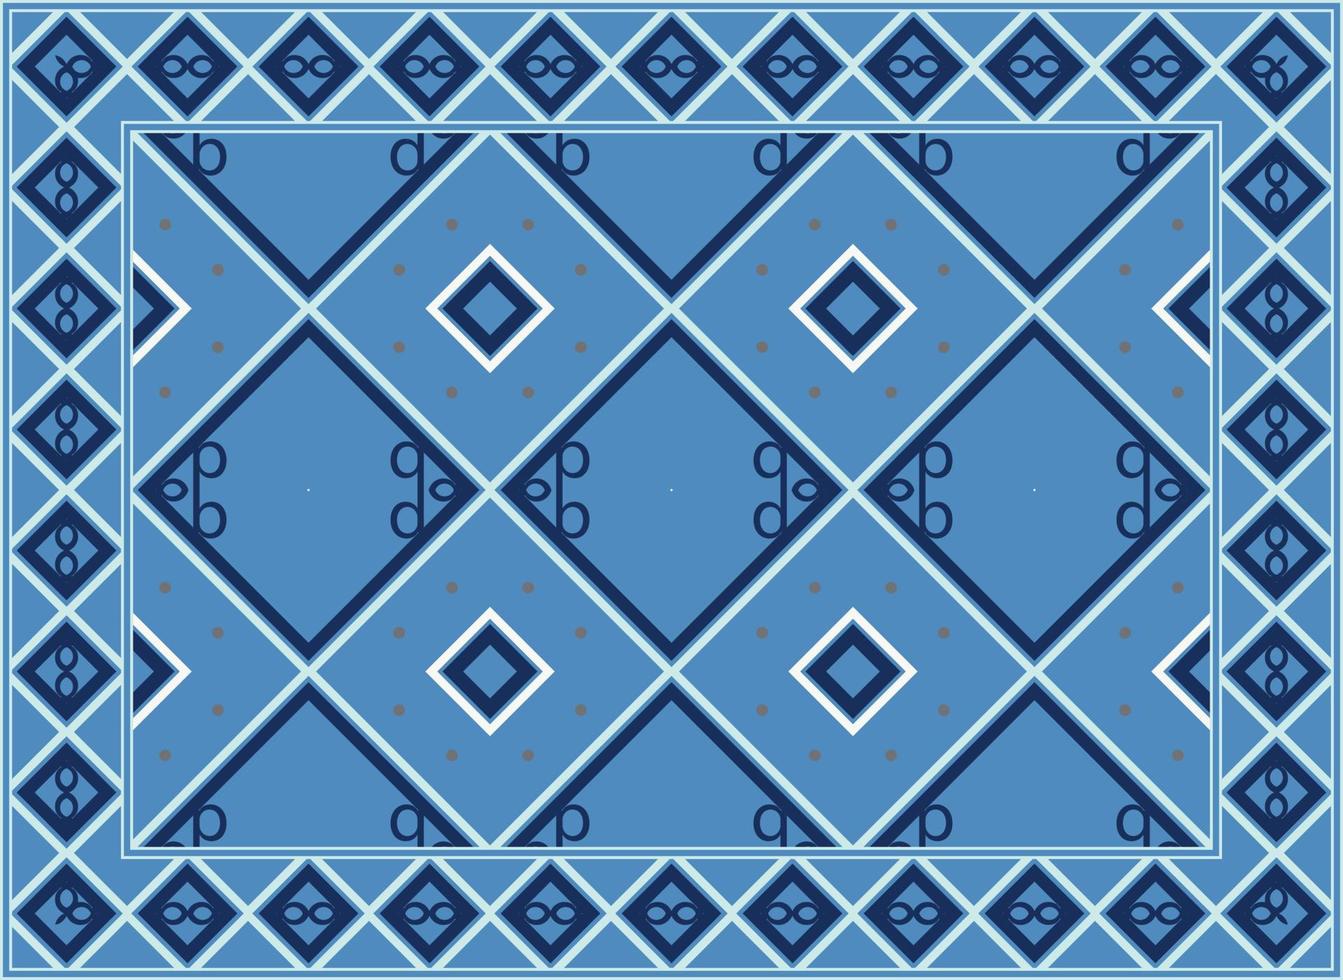 antiguo persa alfombra, motivo étnico sin costura modelo boho persa alfombra vivo habitación africano étnico azteca estilo diseño para impresión tela alfombras, toallas, pañuelos, bufandas alfombra, vector